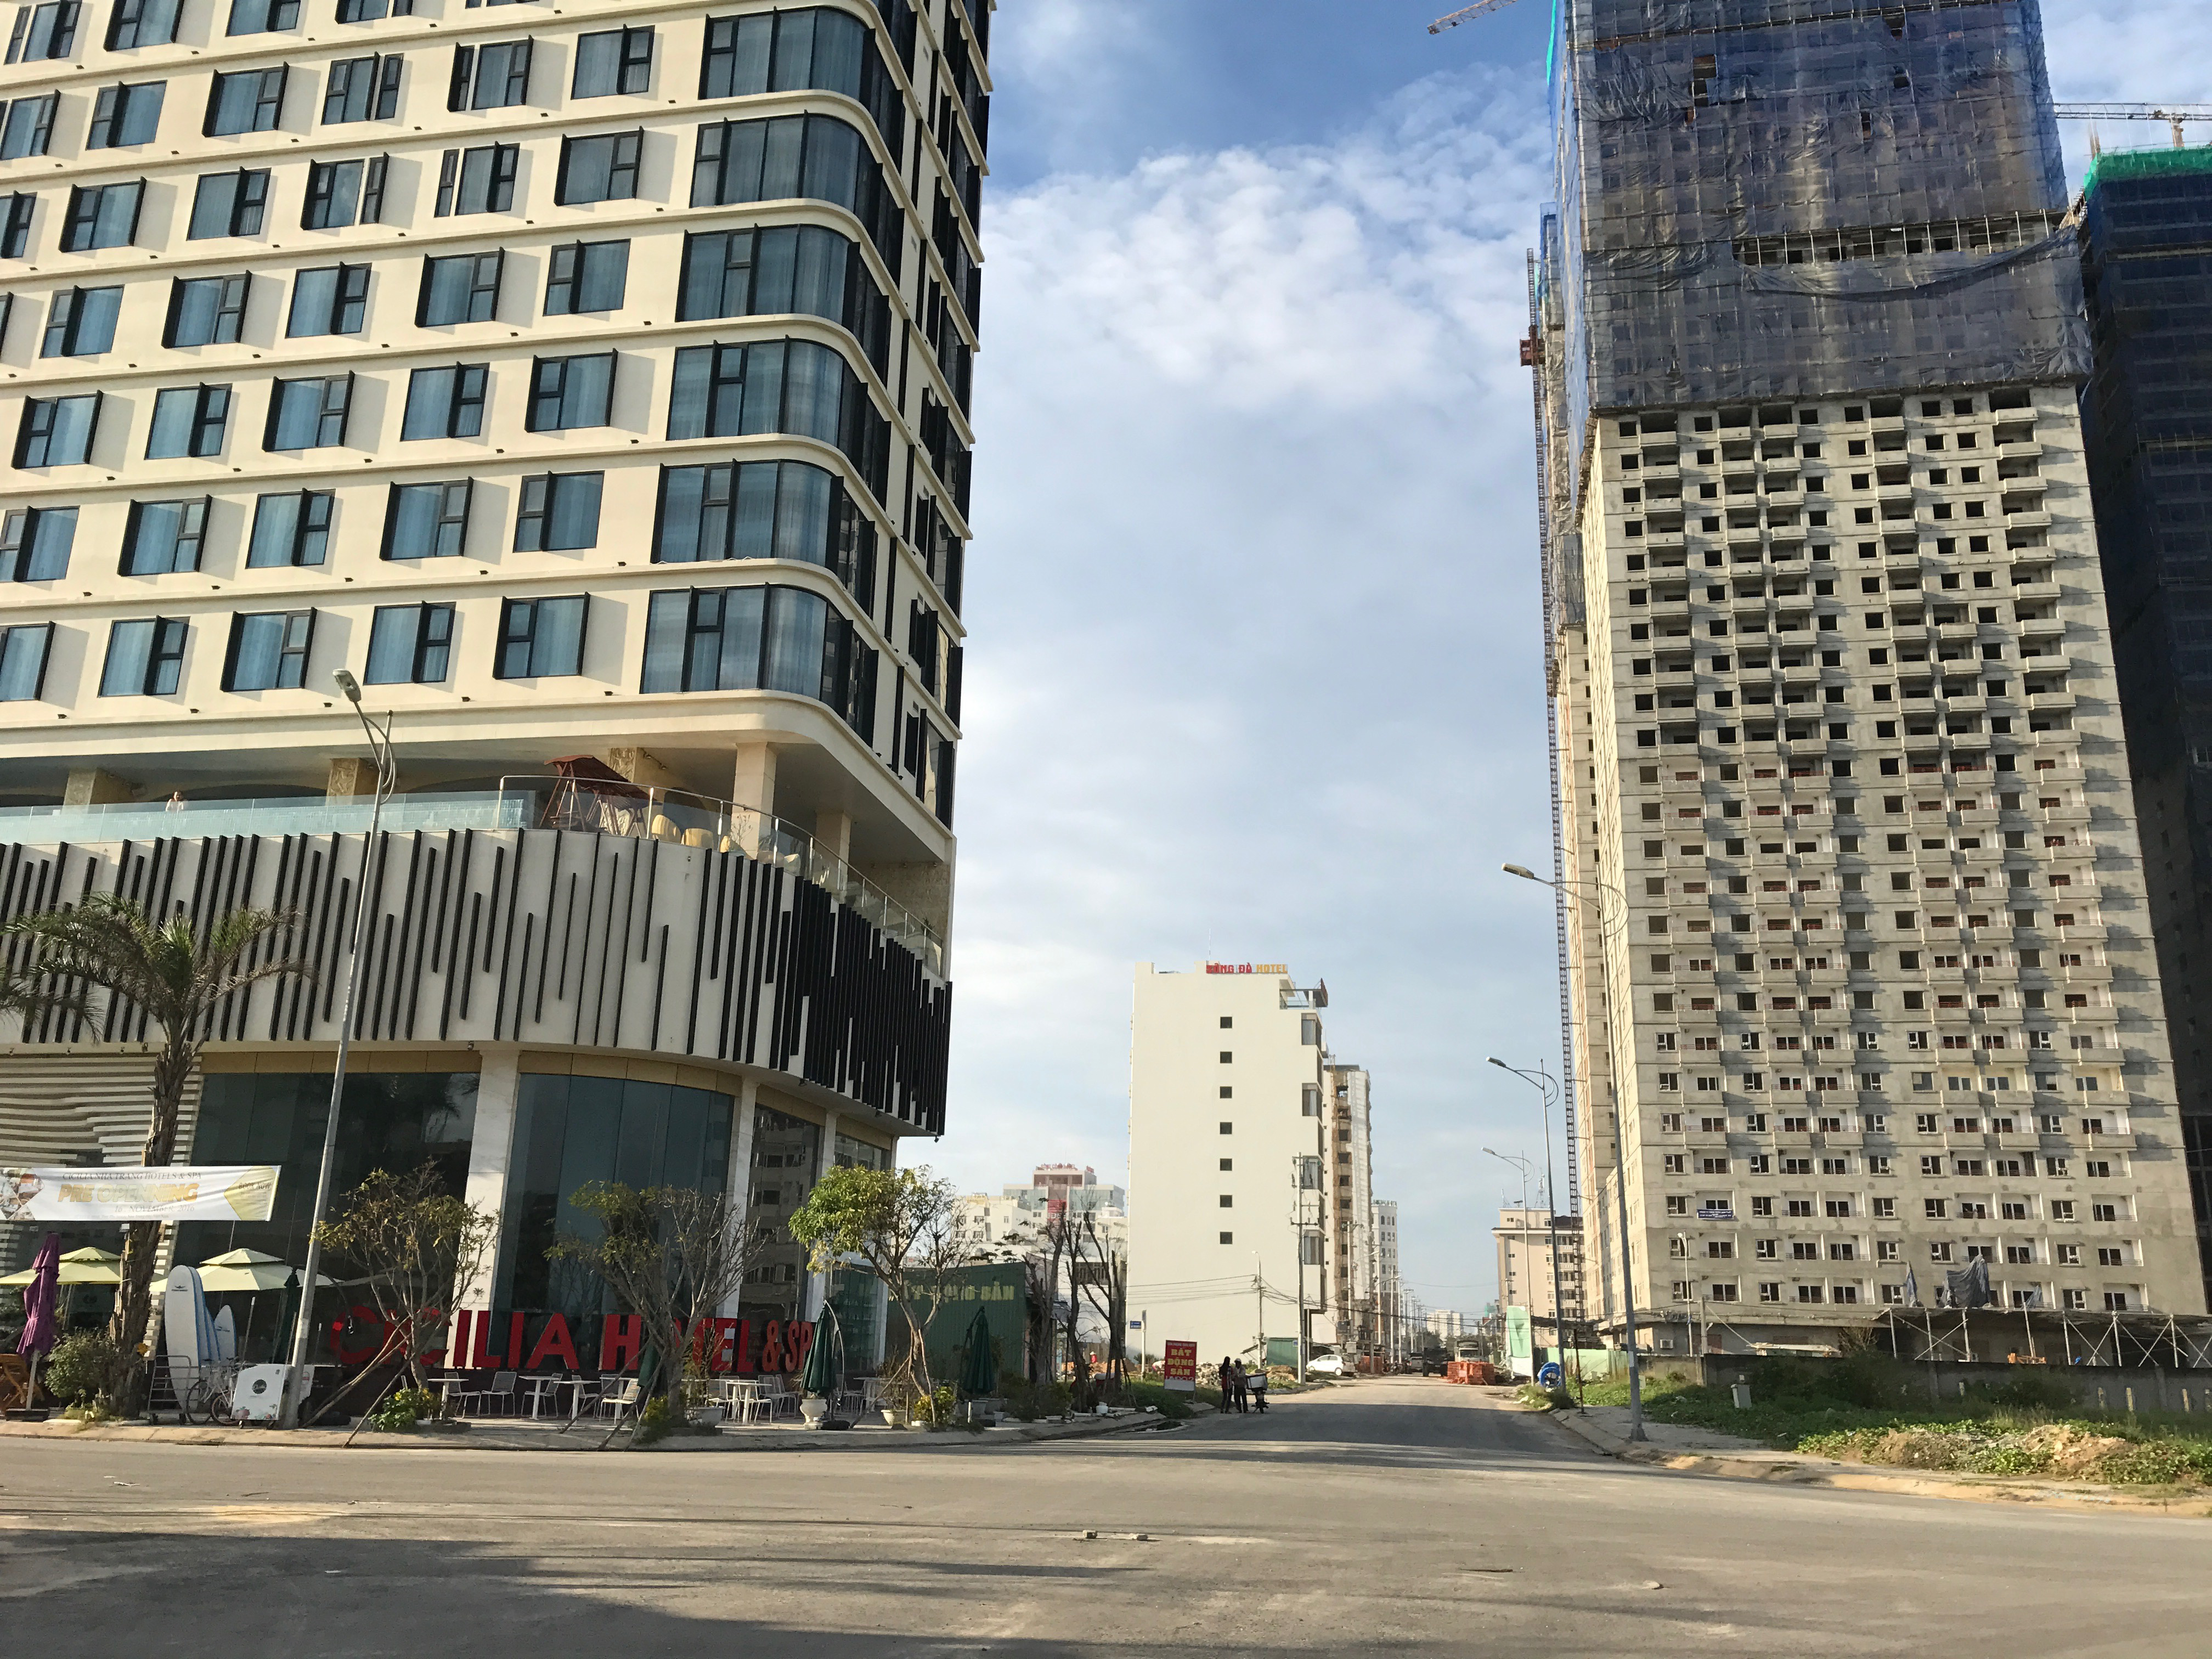 
Tốc độ xây dựng khách sạn 5 sao quá nóng đã đưa khu vực trung tâm thành phố không còn đất cho xây dựng chung cư
